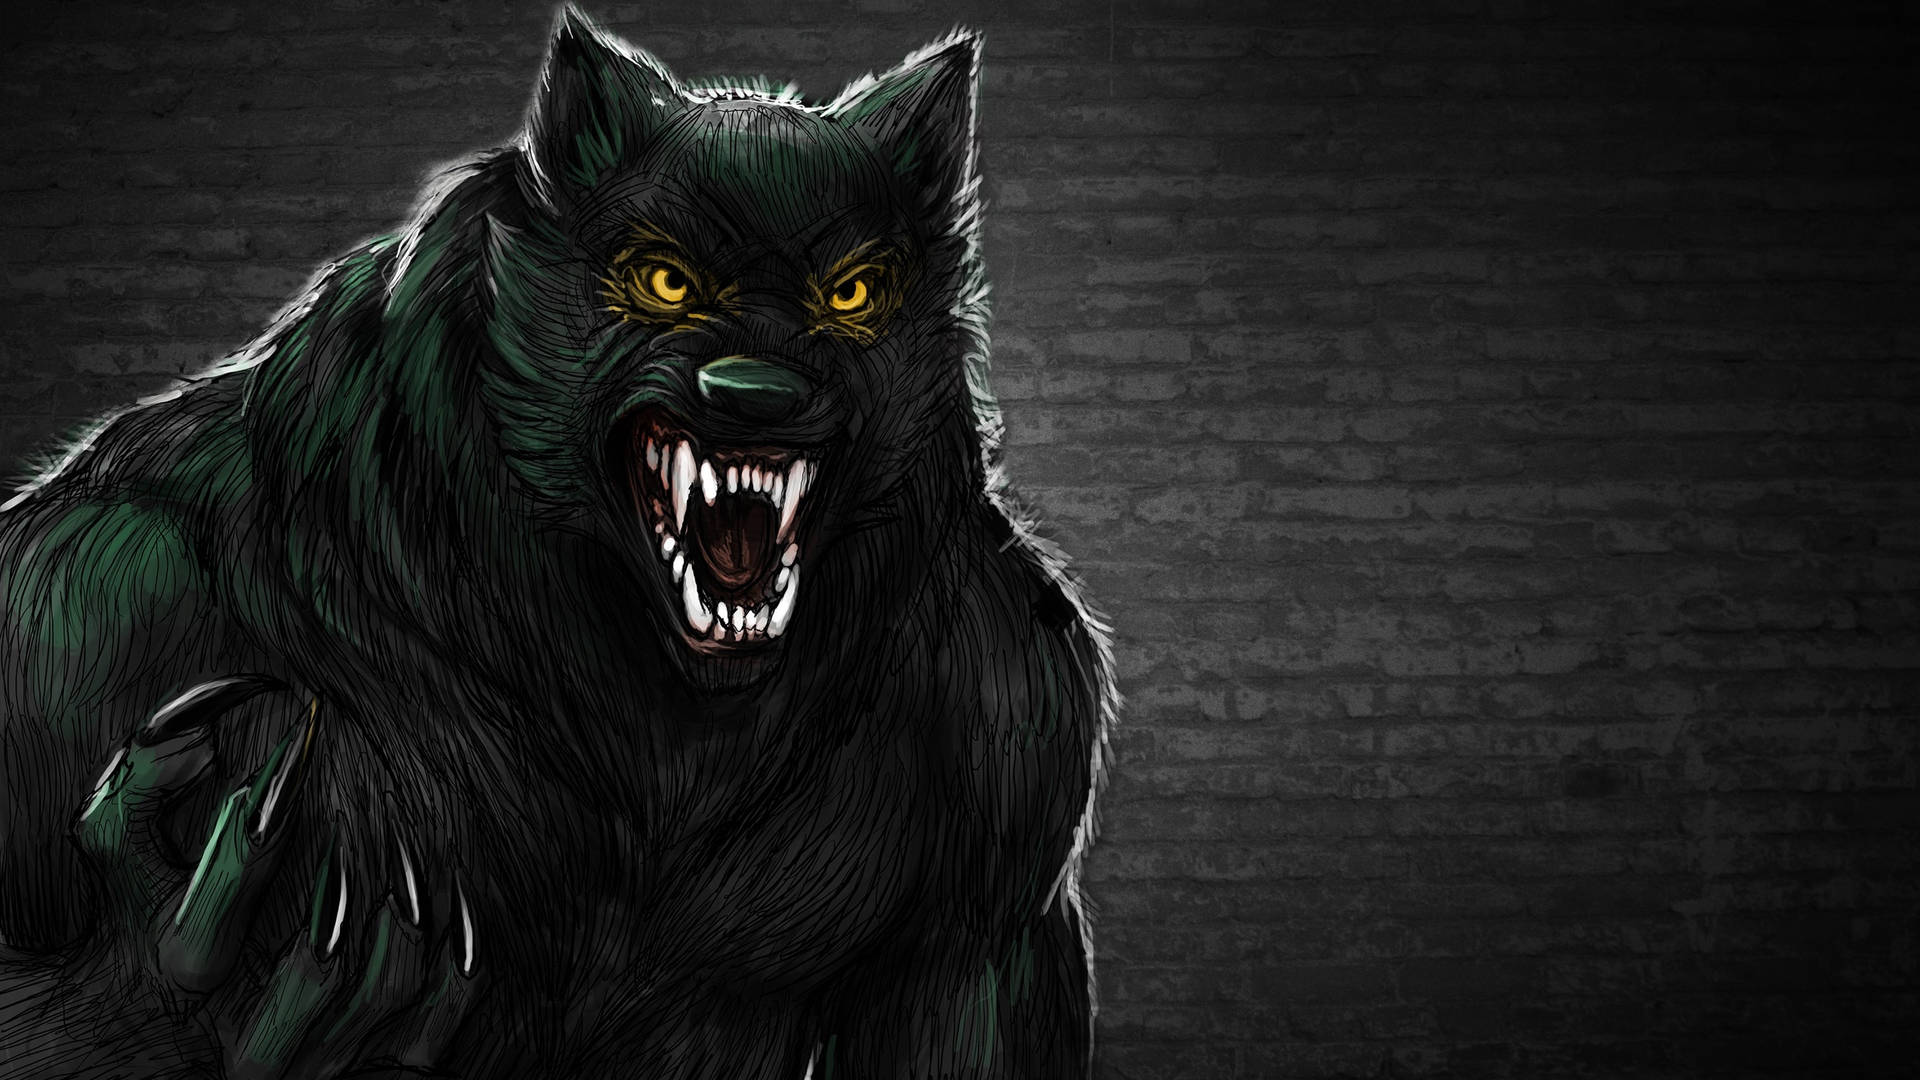 Dark Urban Werewolf Art Background